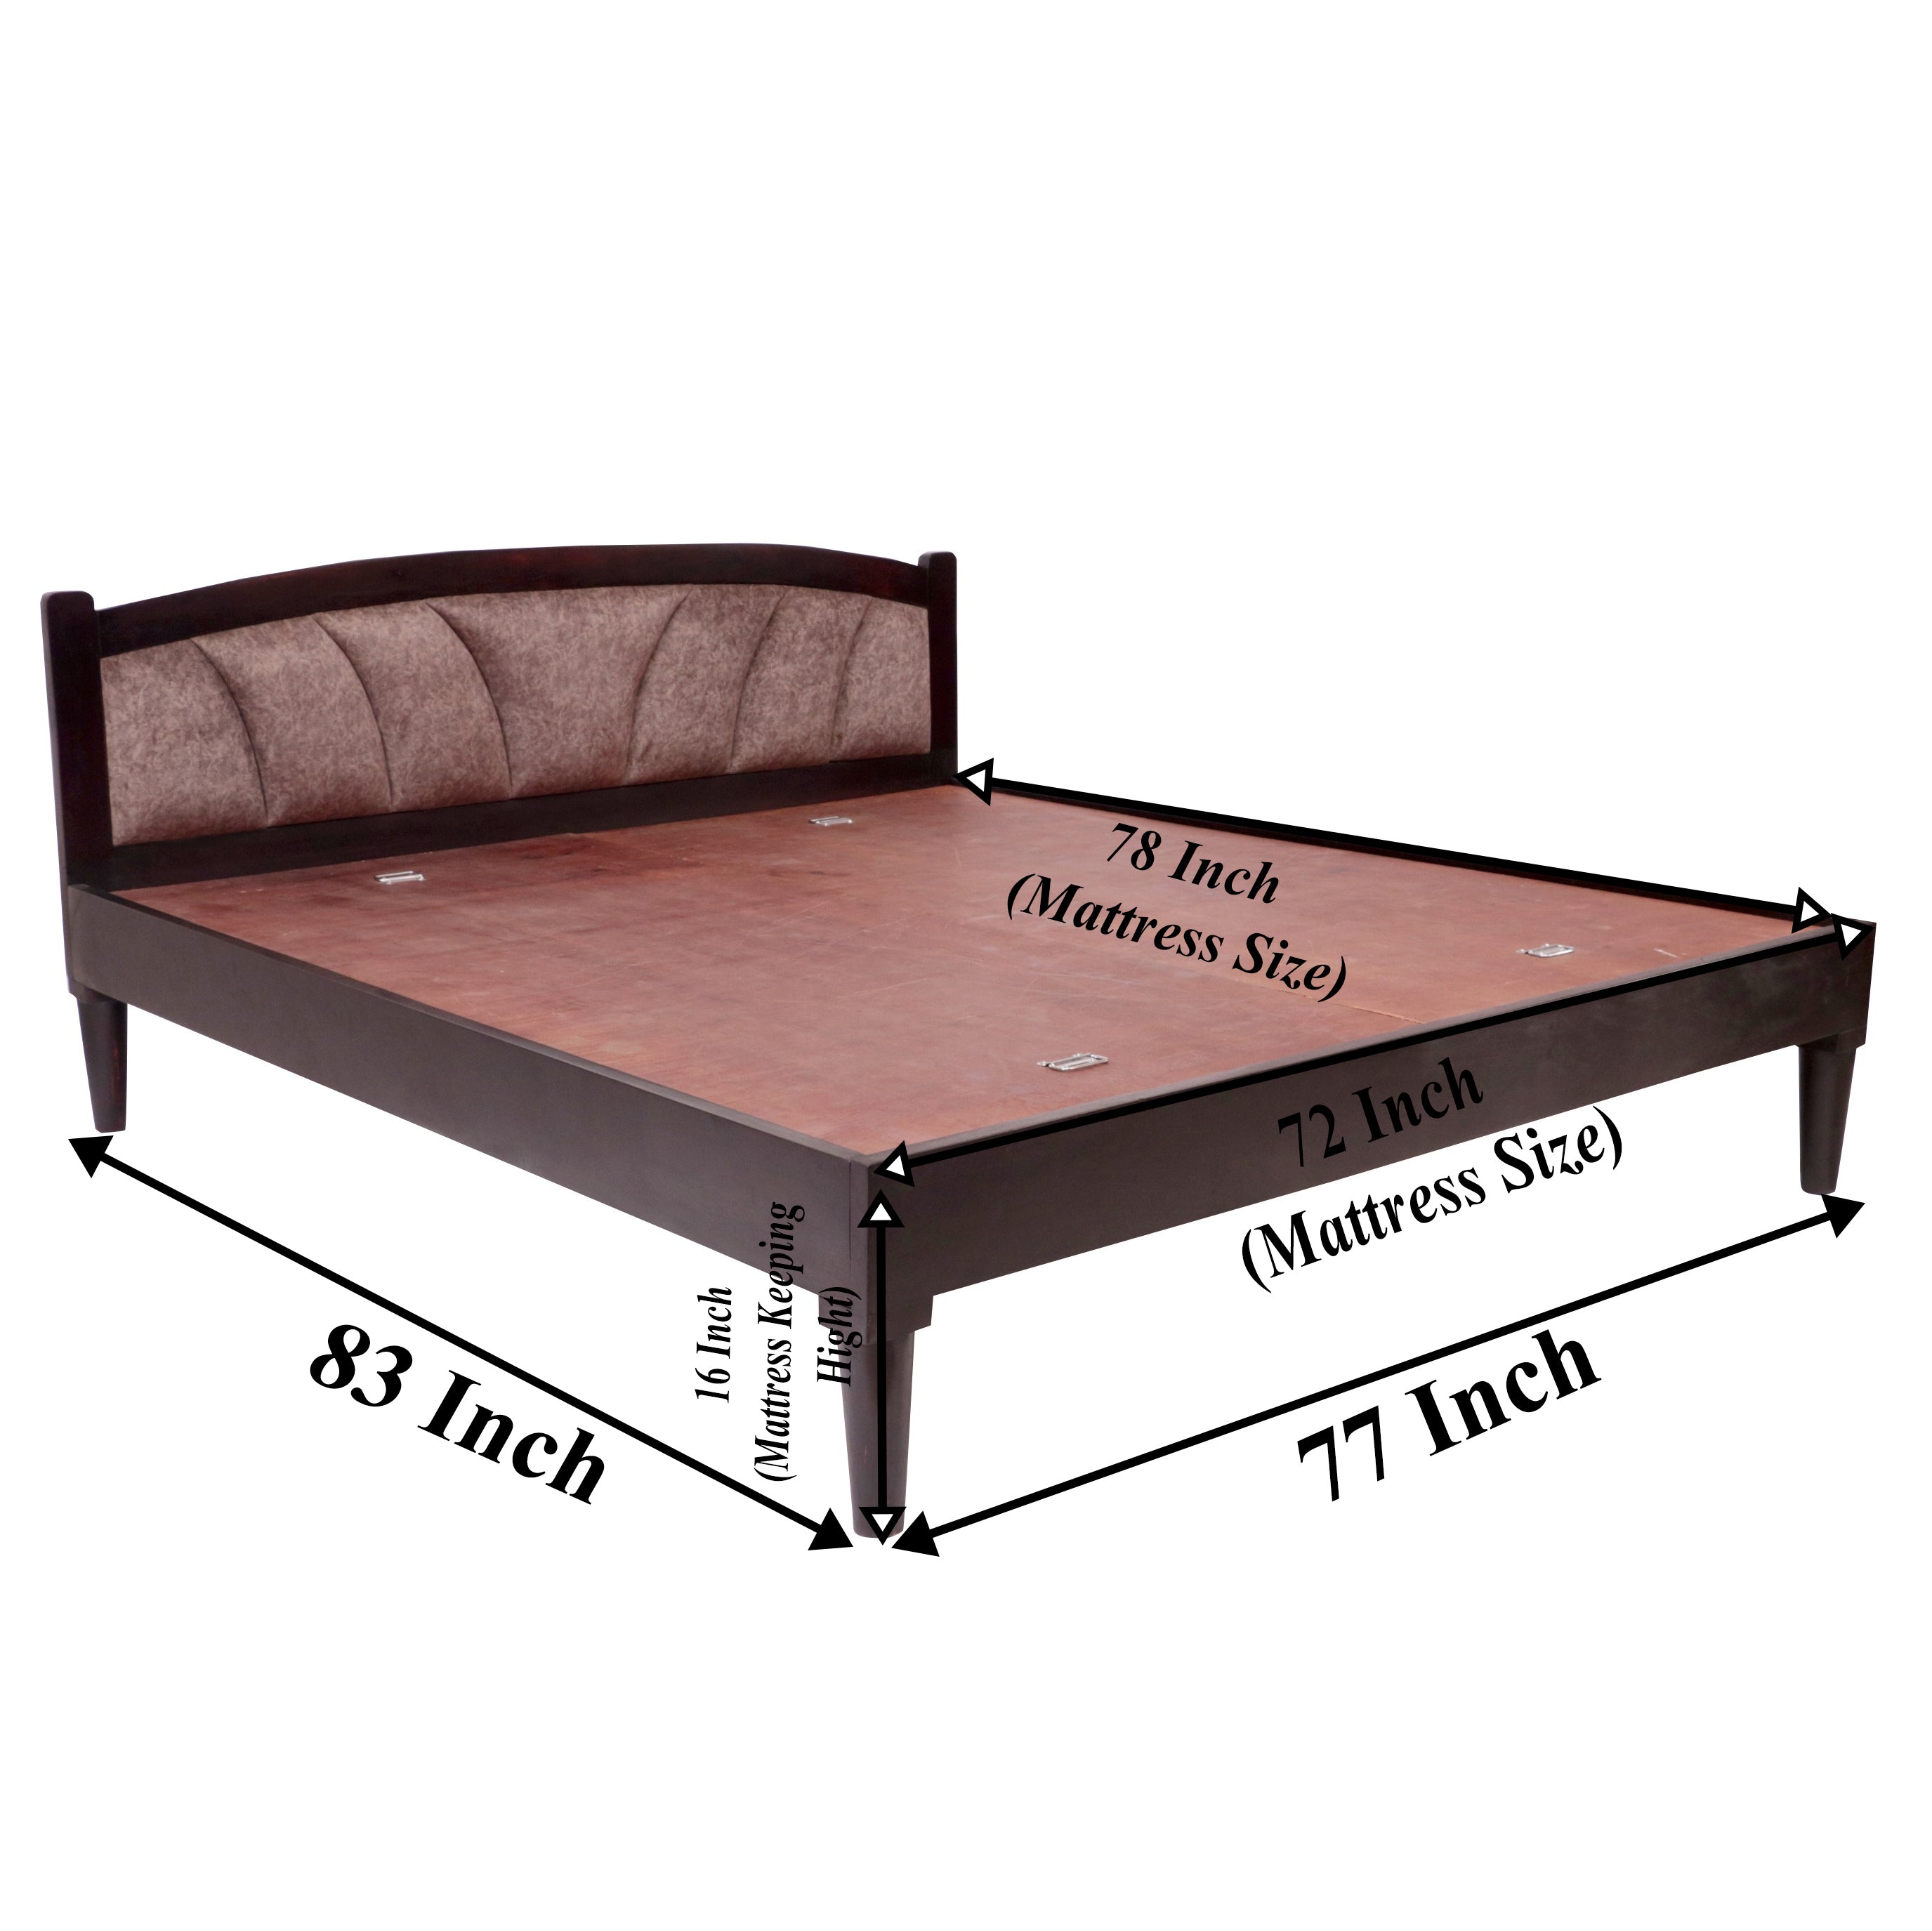 Teak wood Upholstered Bed Bed